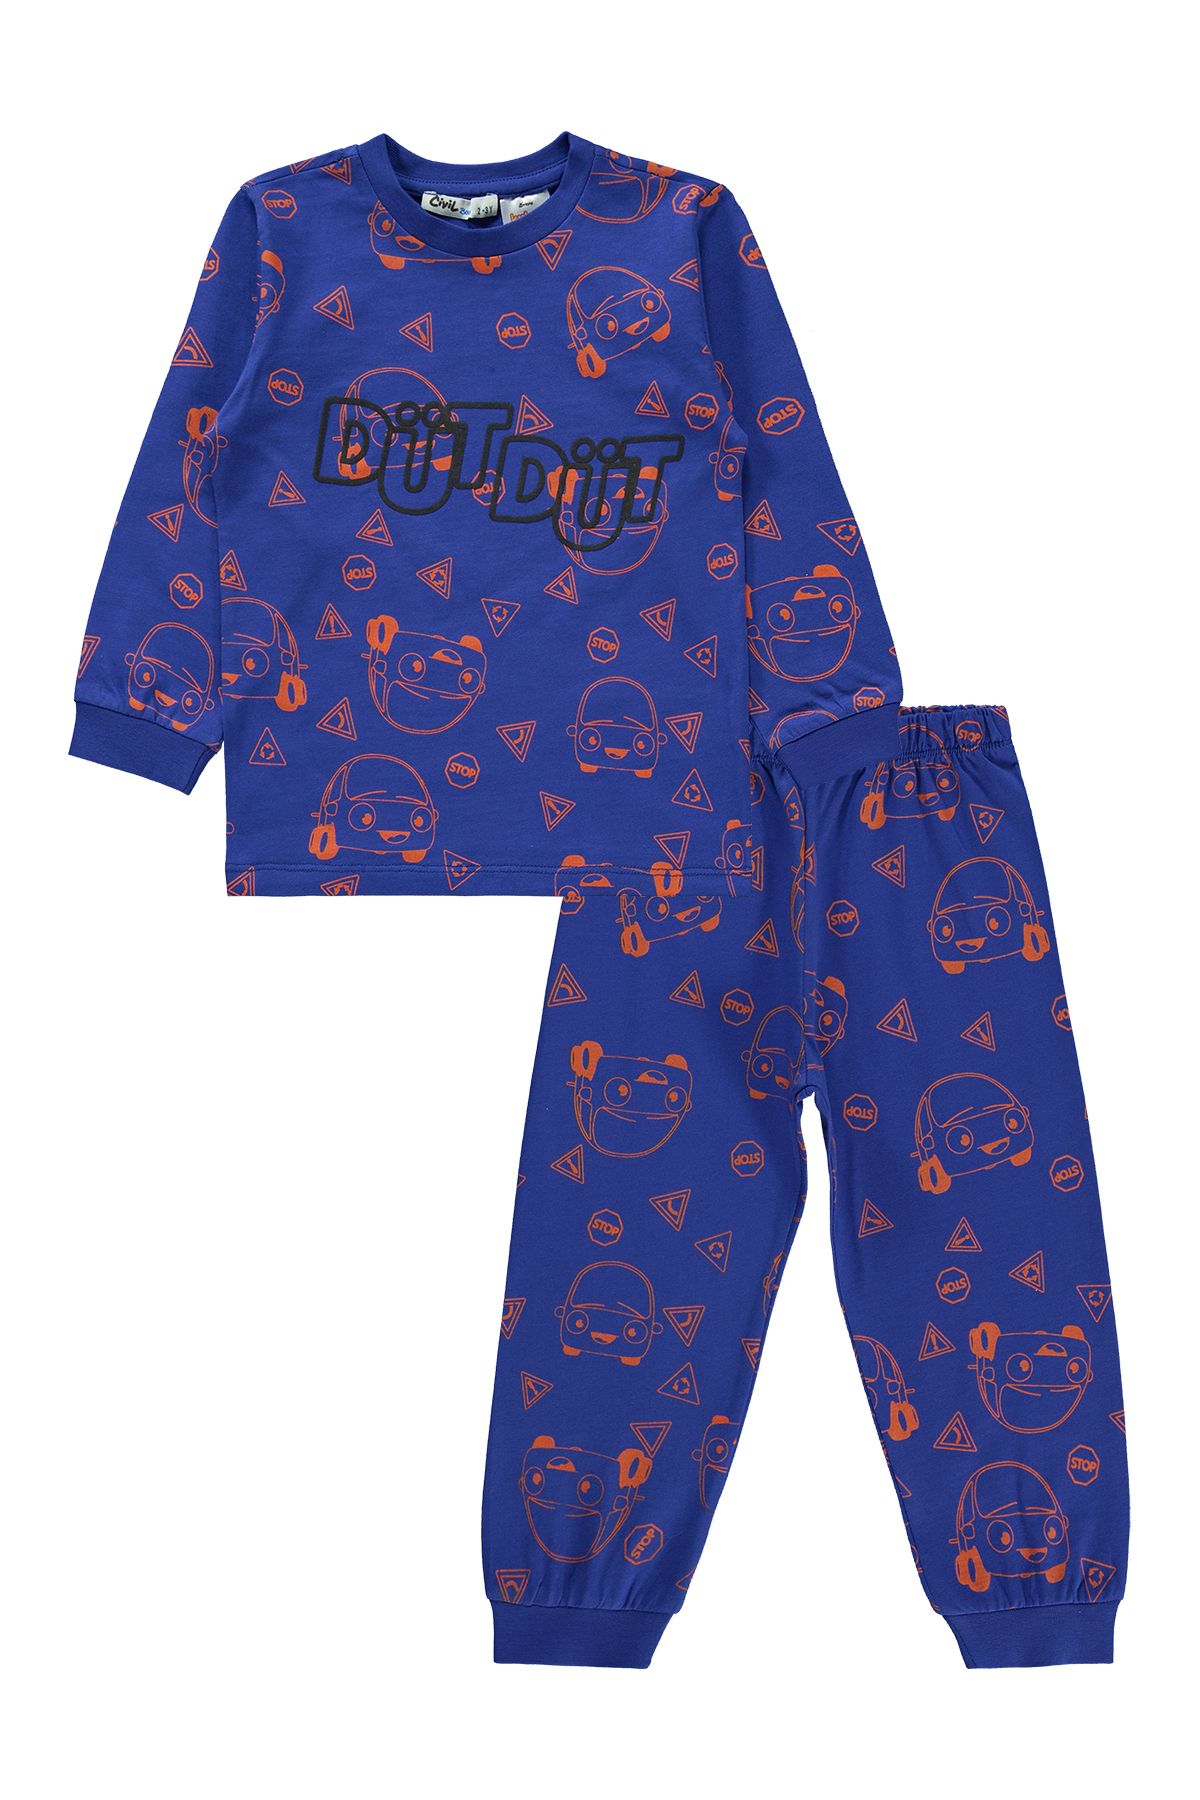 Kukuli Erkek Çocuk Pijama Takımı 2-5 Yaş Saks Mavisi